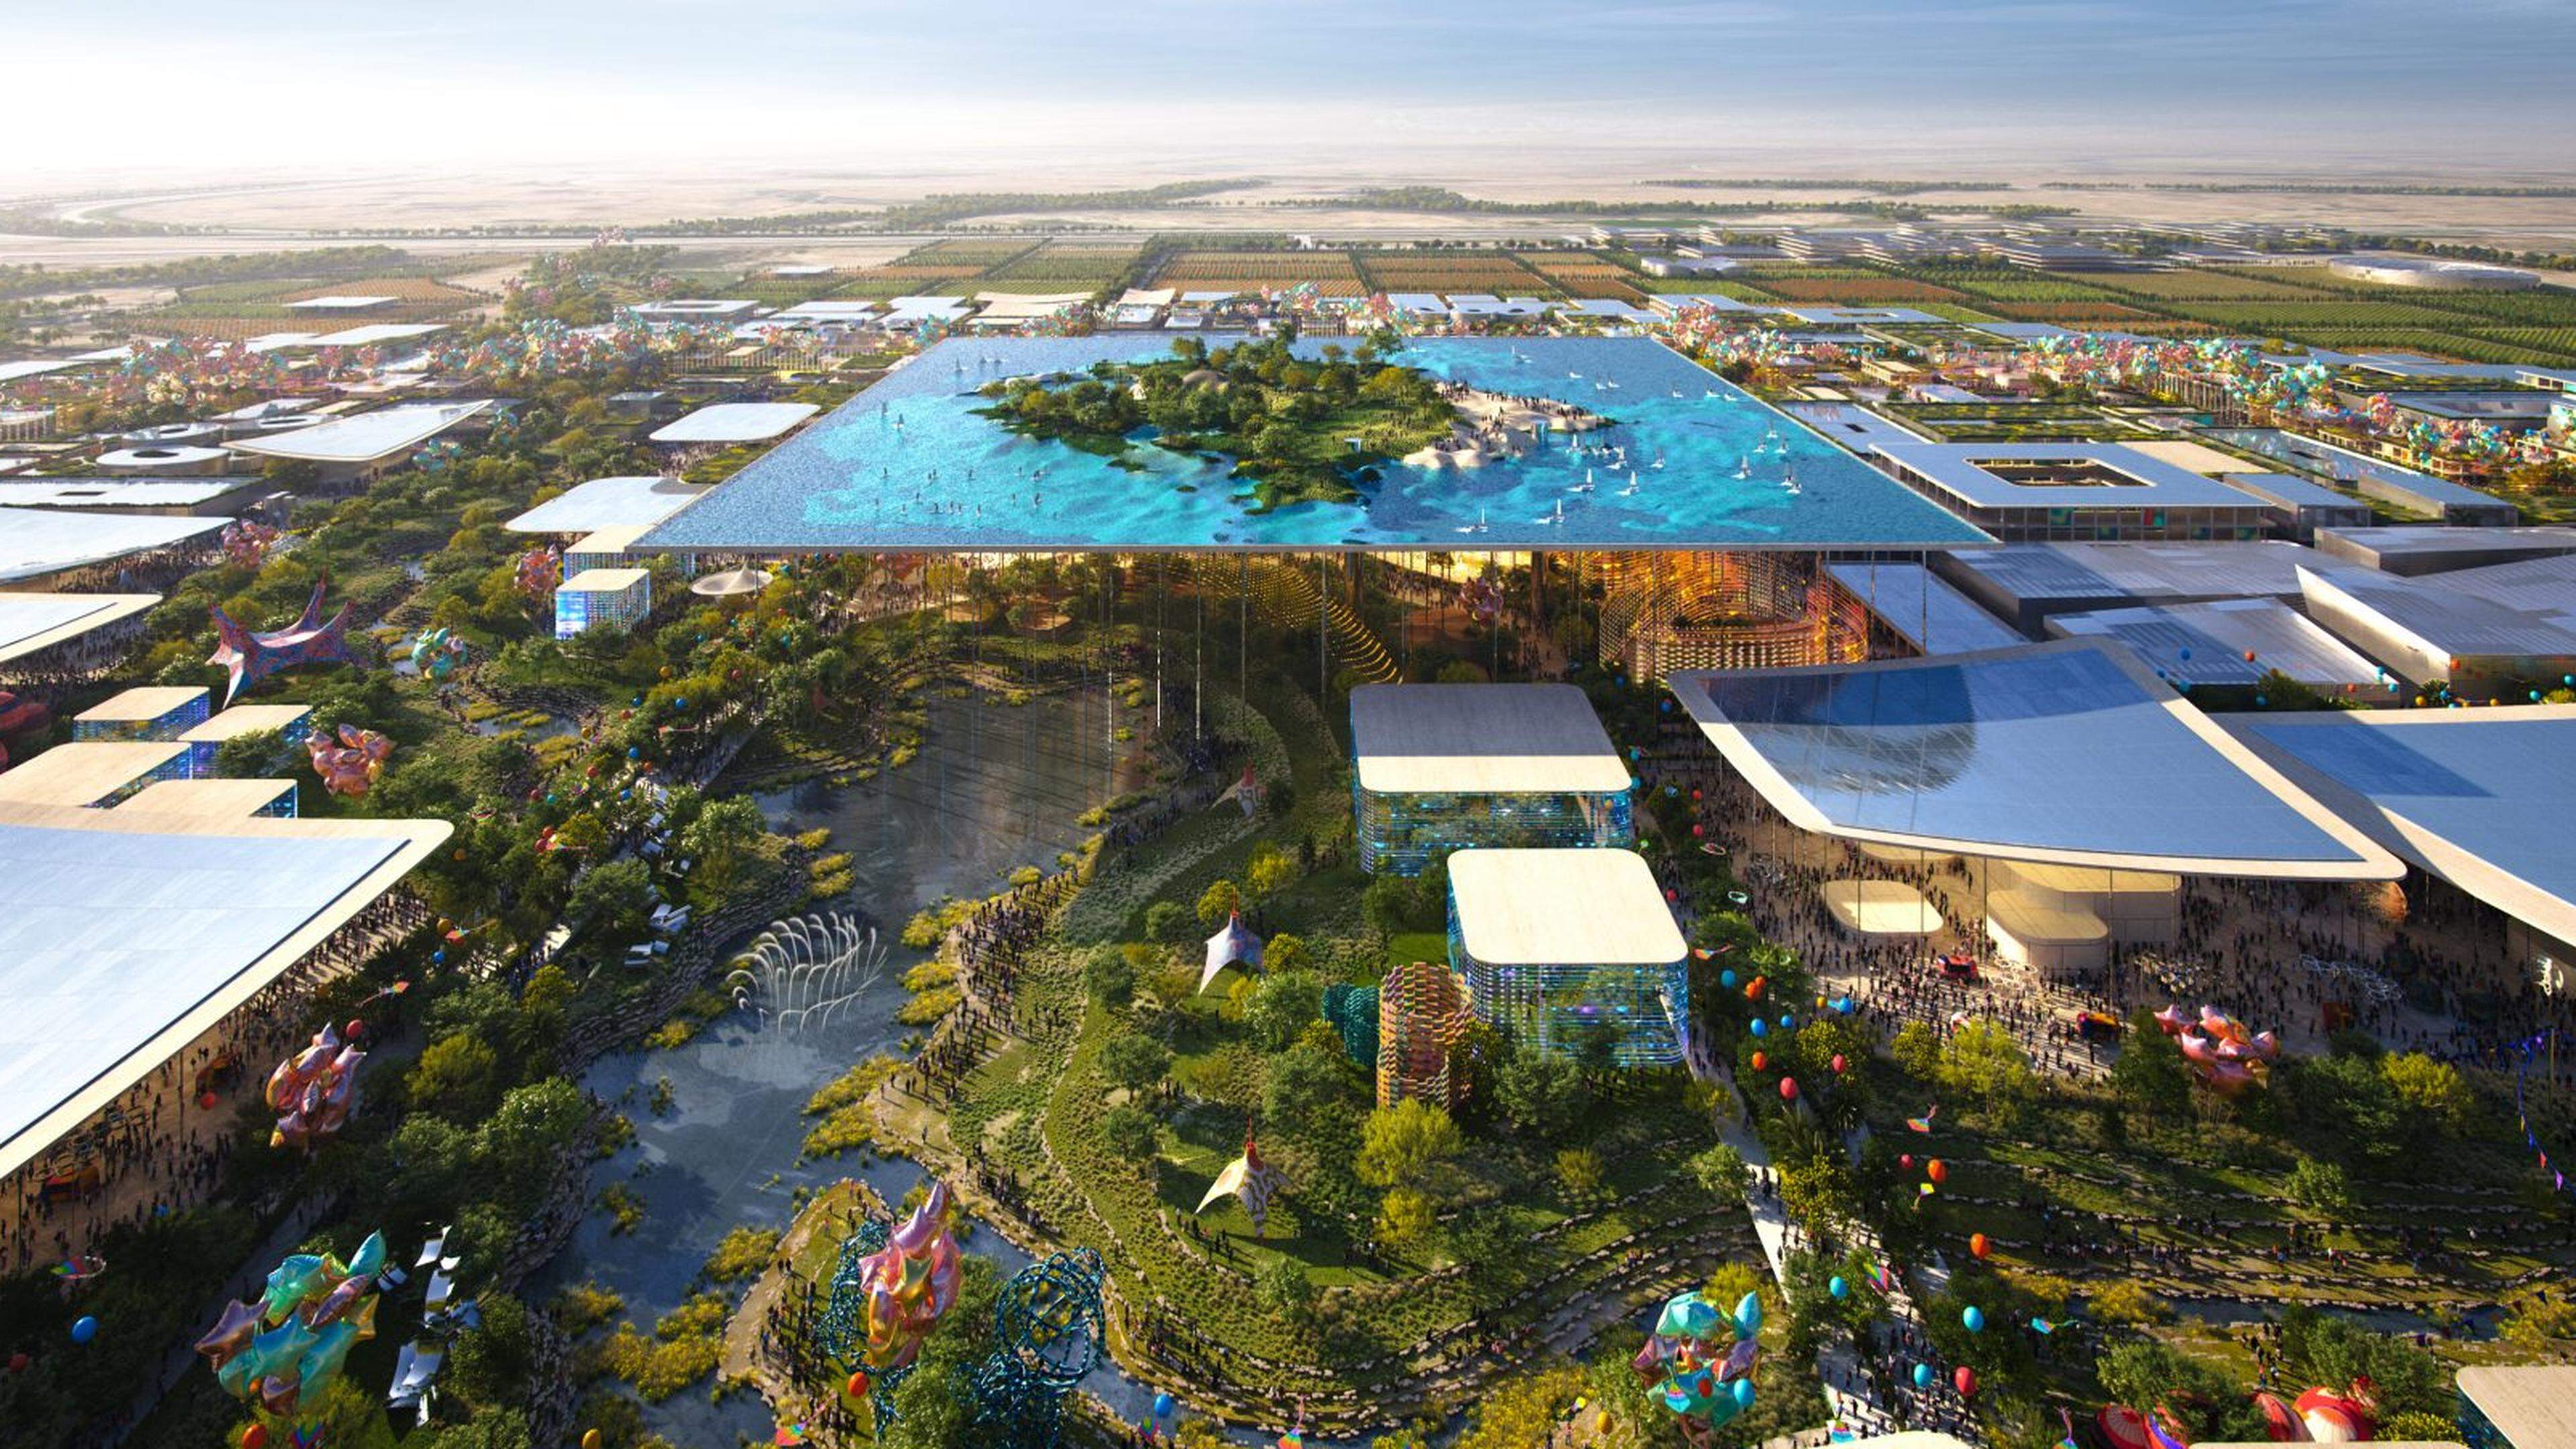 Expo universelle, villes futuristes, événements sportifs... les projets fous de l’Arabie saoudite